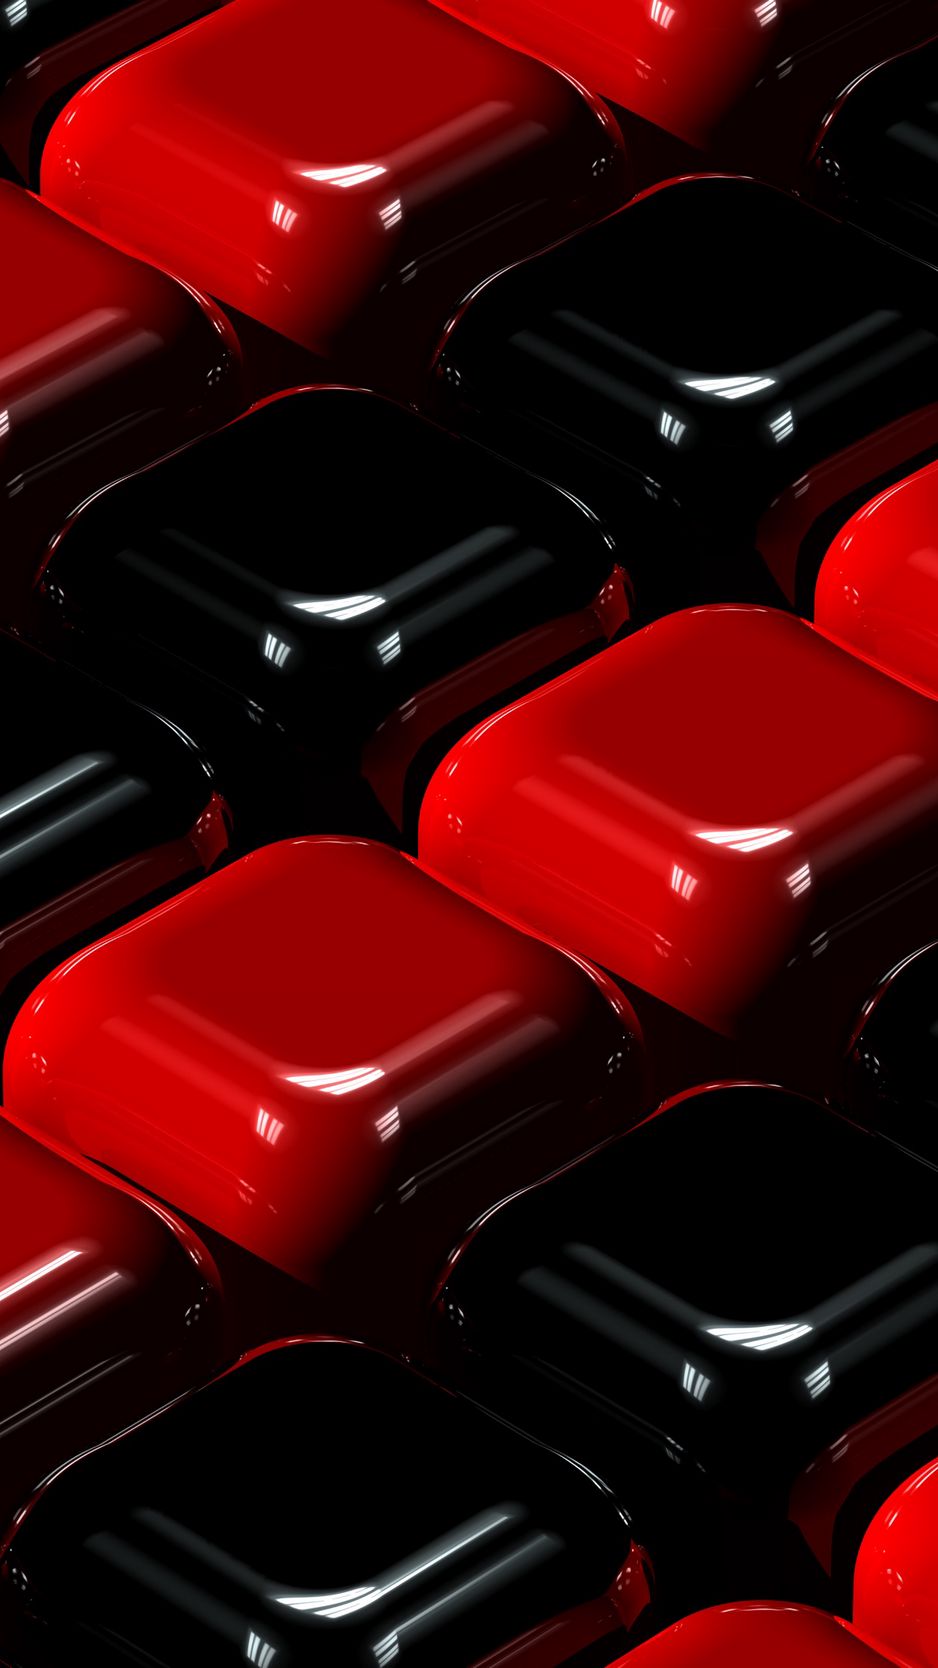 Hình nền iPhone 3D đỏ đen cubes sẽ làm cho màn hình của bạn trở nên đặc biệt hơn bao giờ hết. Với các khối hình vuông đan xen với tông màu đỏ và đen, mẫu thiết kế này đem lại cho thiết bị của bạn vẻ đẹp vừa hiện đại, vừa cá tính. Đừng bỏ lỡ cơ hội để tận hưởng sự độc đáo của nó.